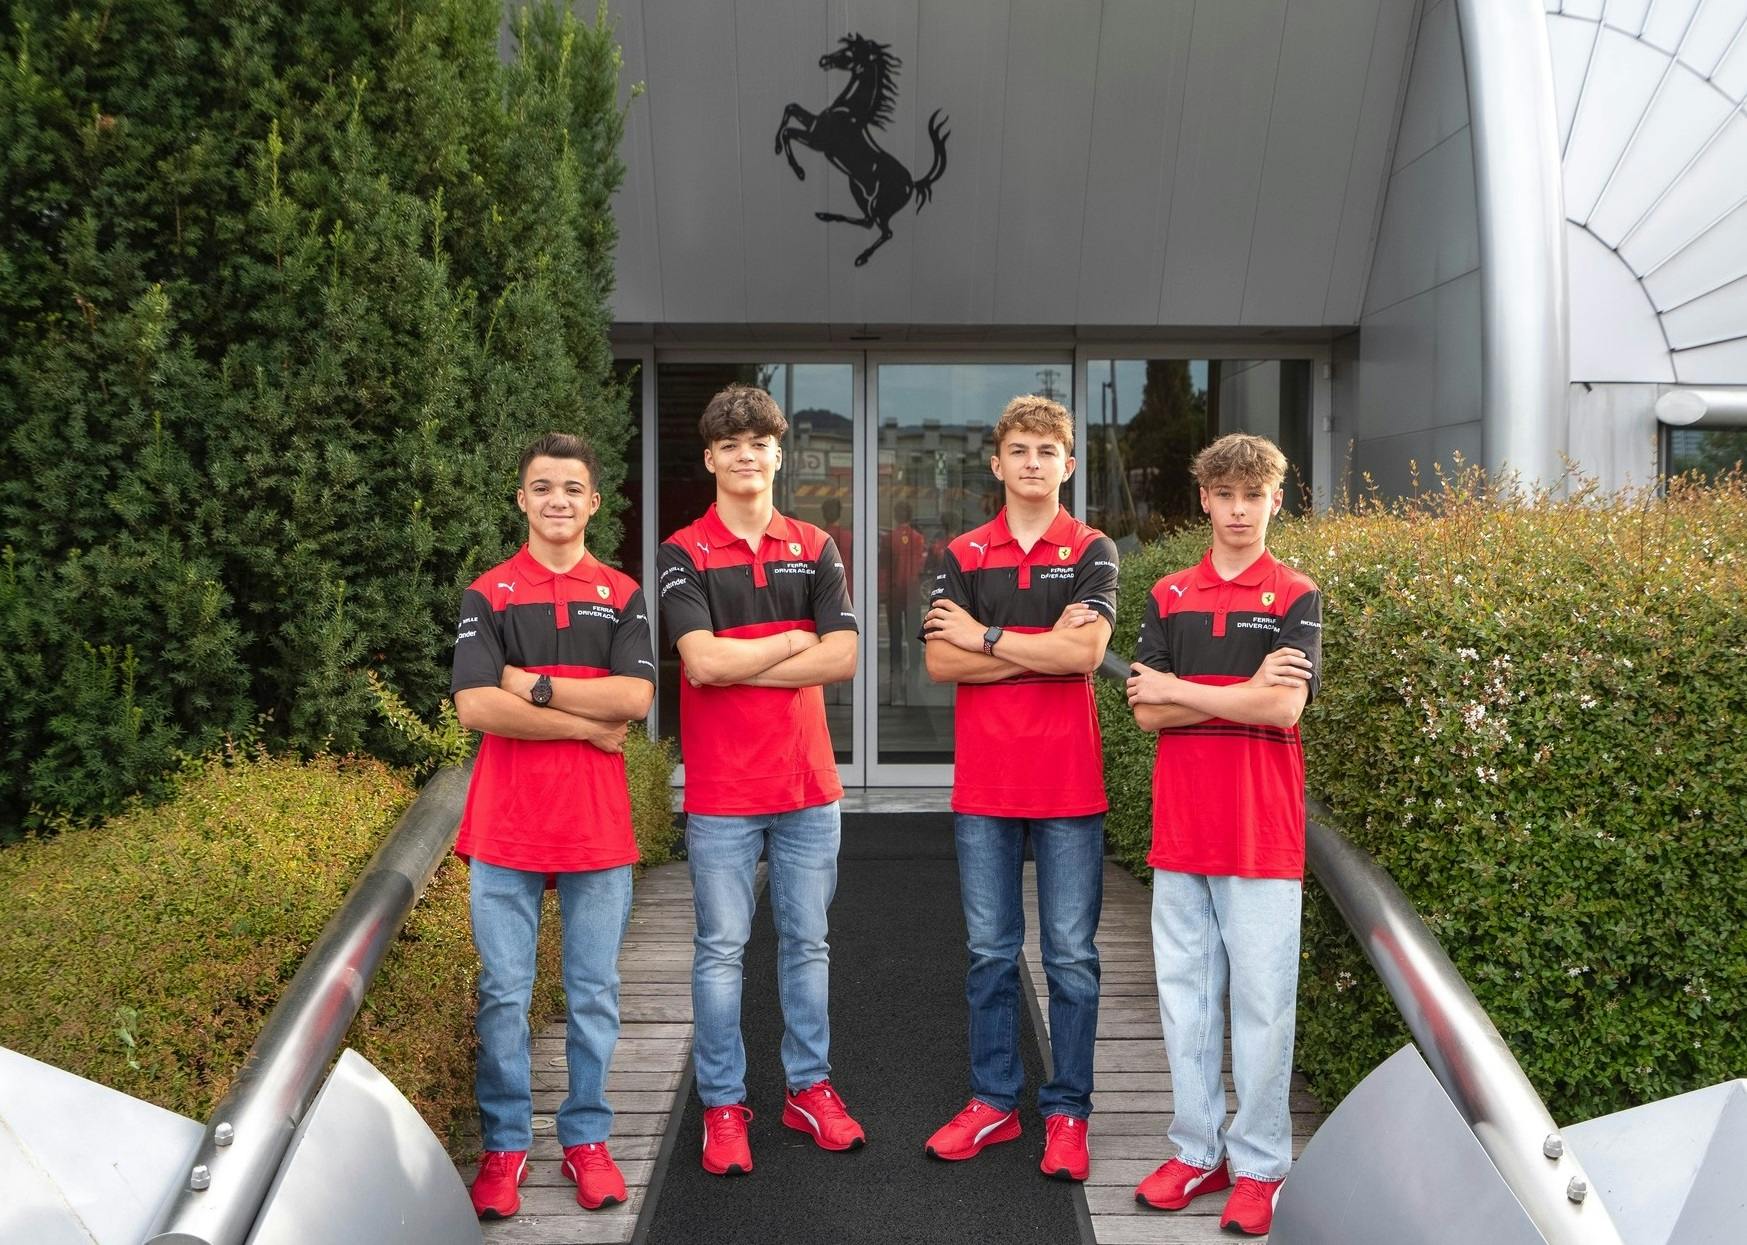 Camp Ferrari z udziałem Polaków. Od lewej stoją: Giacomo Pedrini, Francesco Marenghi, Jan Przyrowski i Maciej Gładysz (fot. Ferrari).